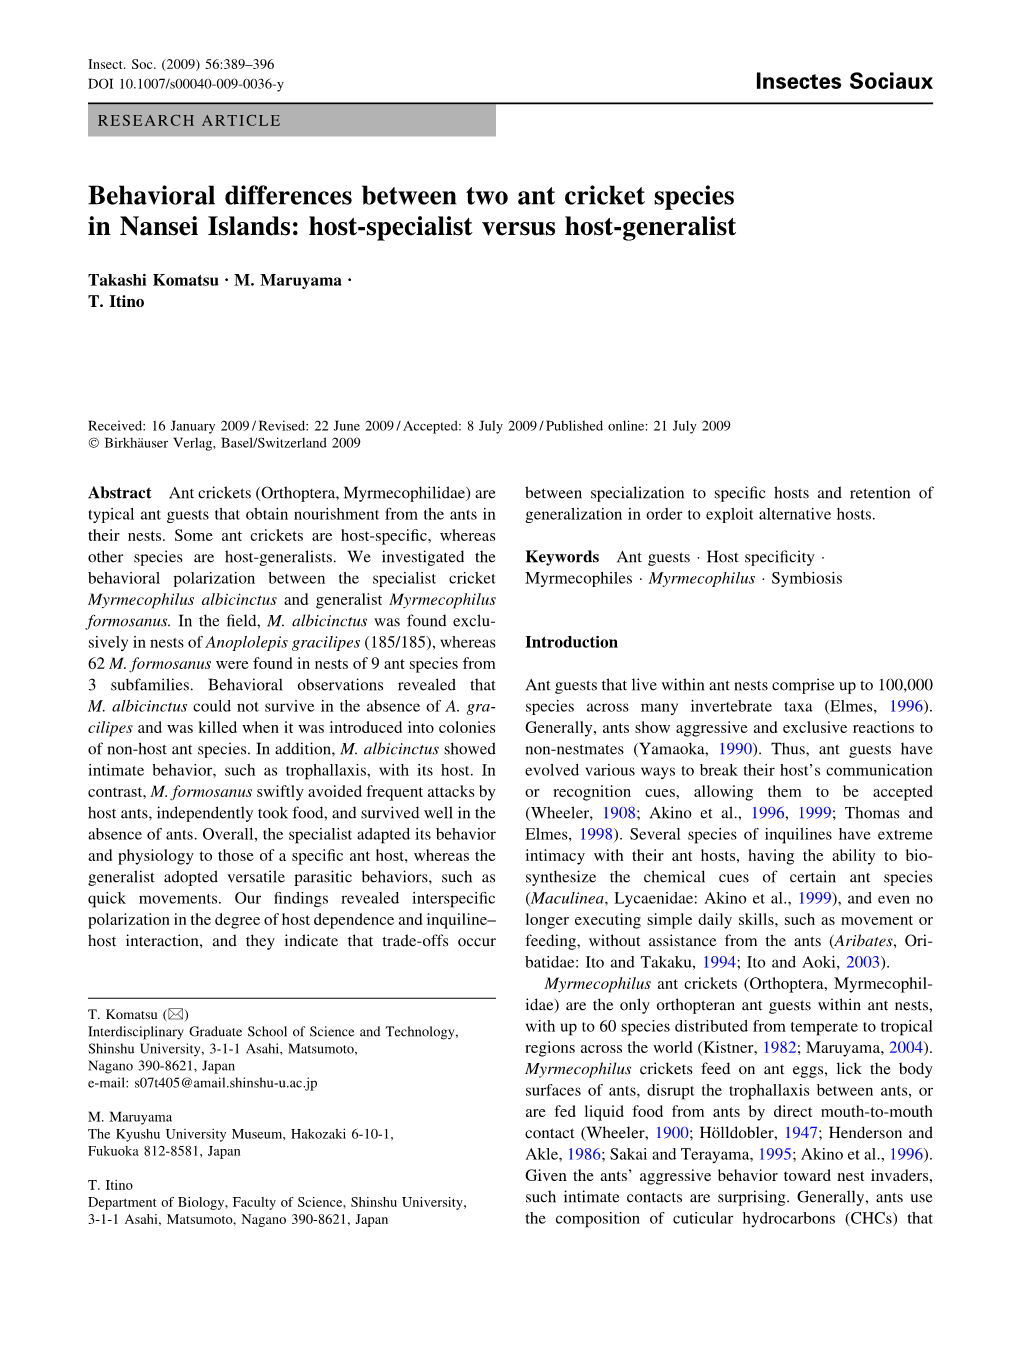 Behavioral Differences Between Two Ant Cricket Species in Nansei Islands: Host-Specialist Versus Host-Generalist